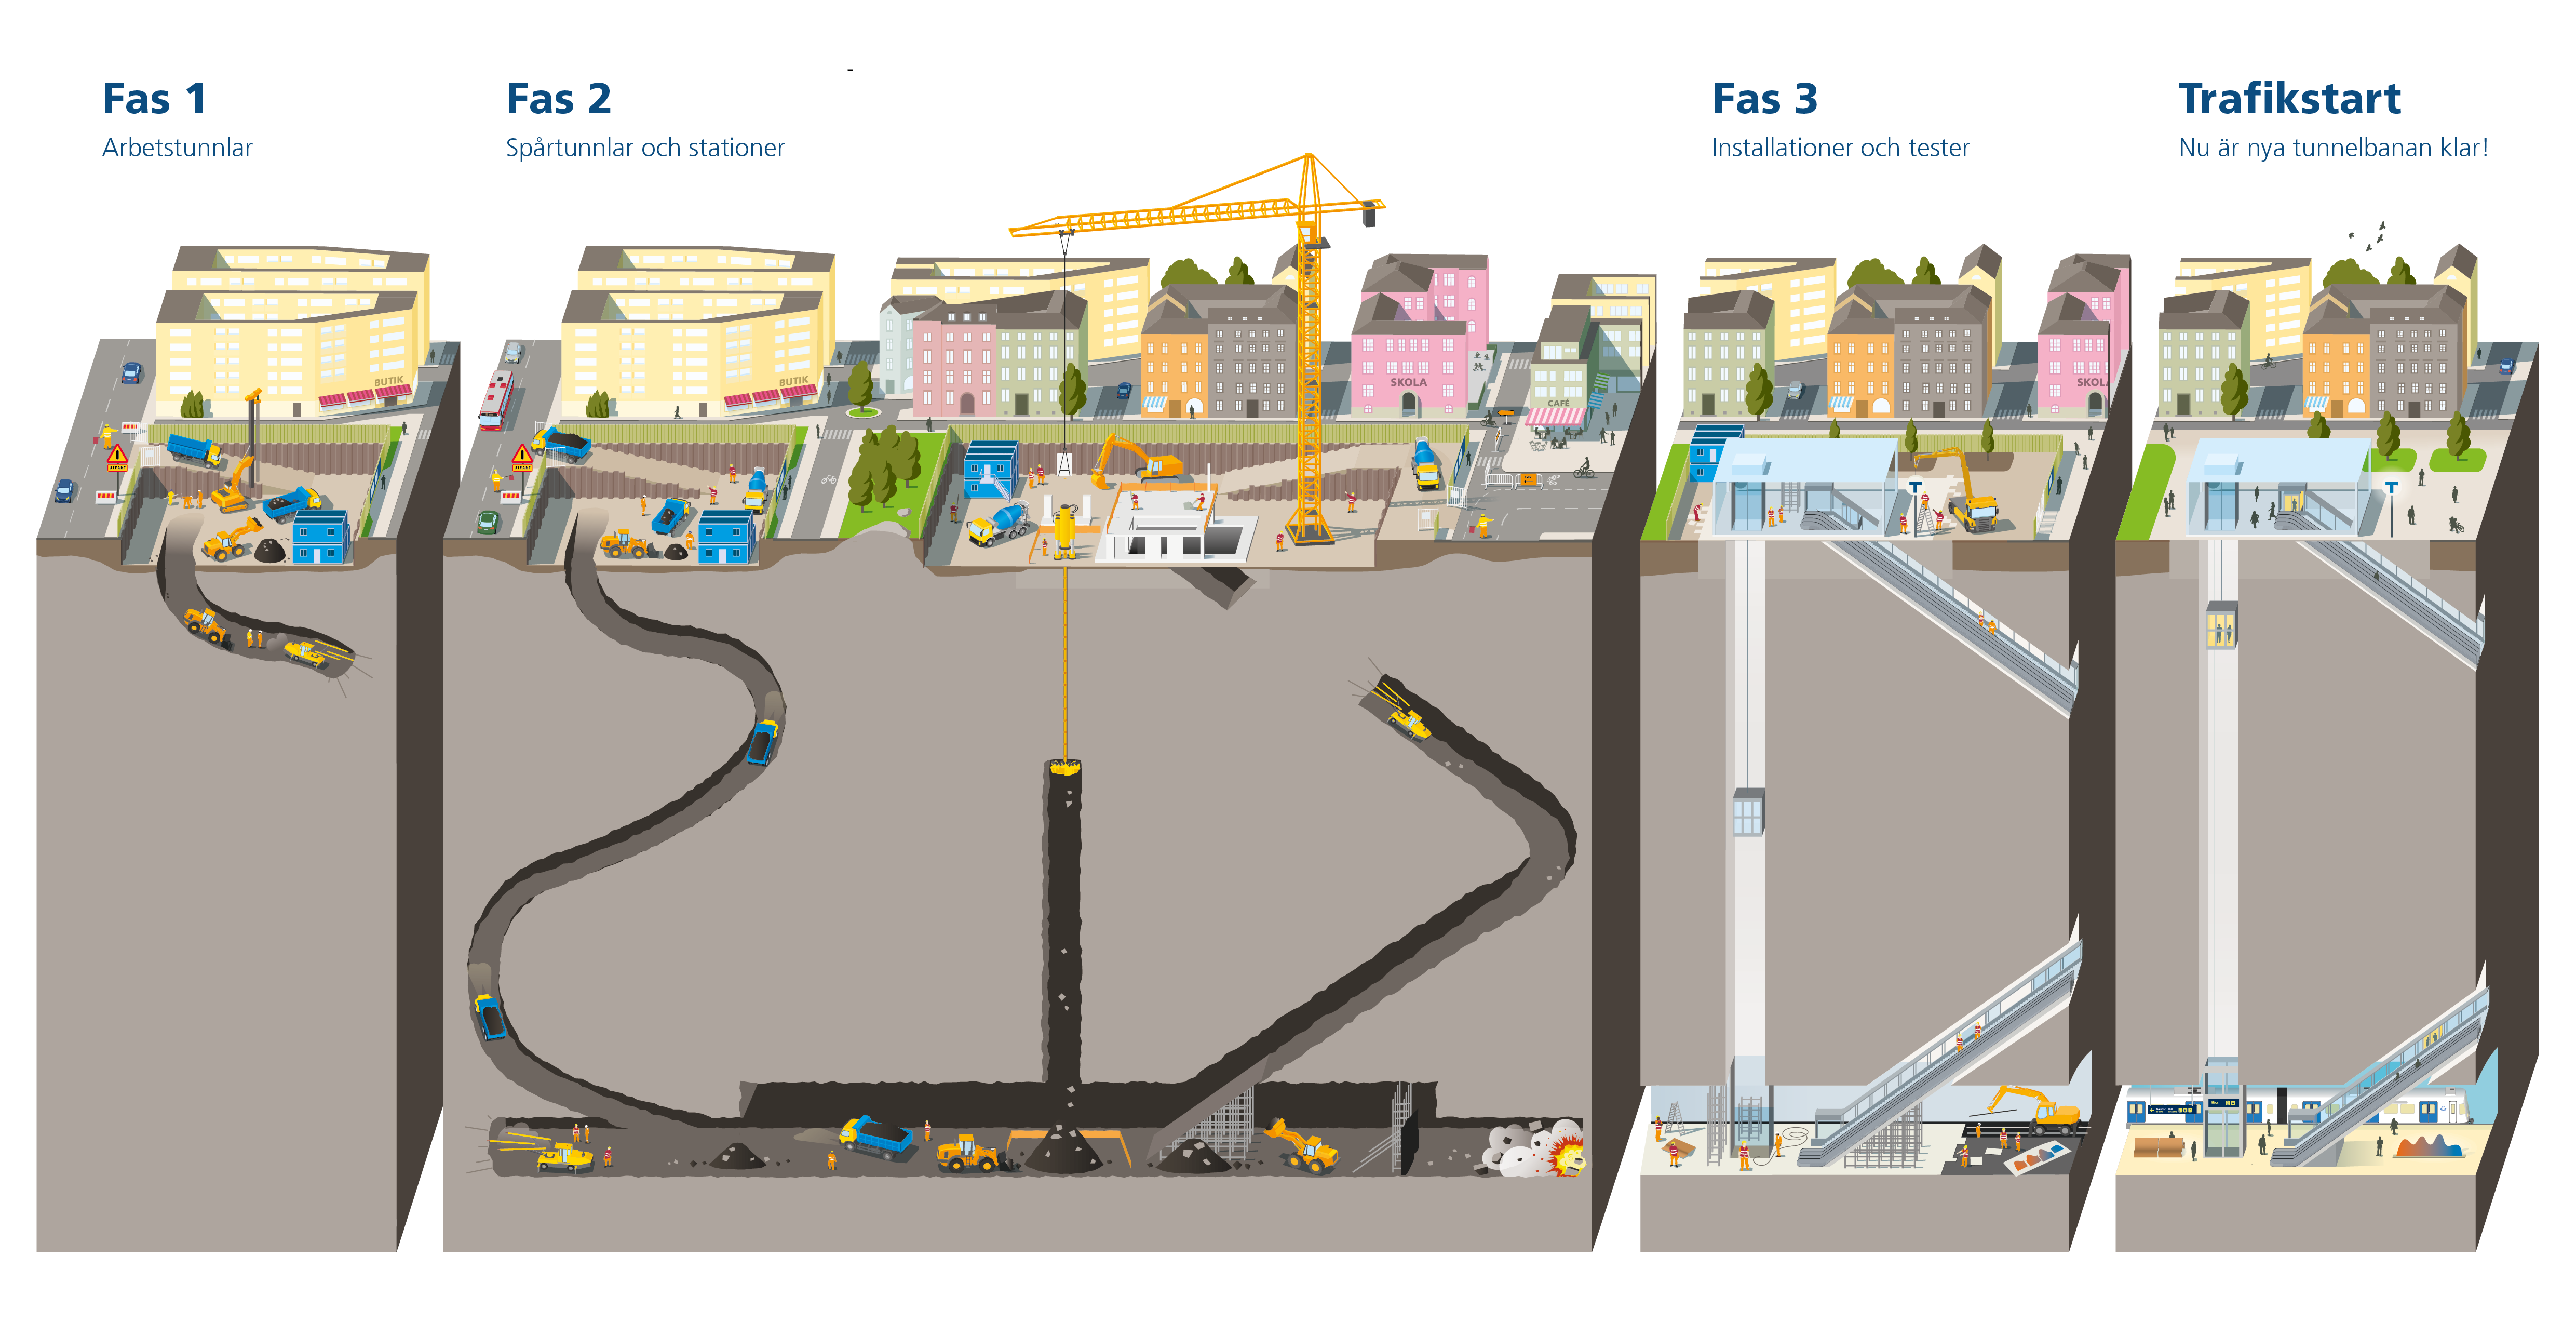 Bild som visar de olika faserna av tunnelbanans utbyggnad.